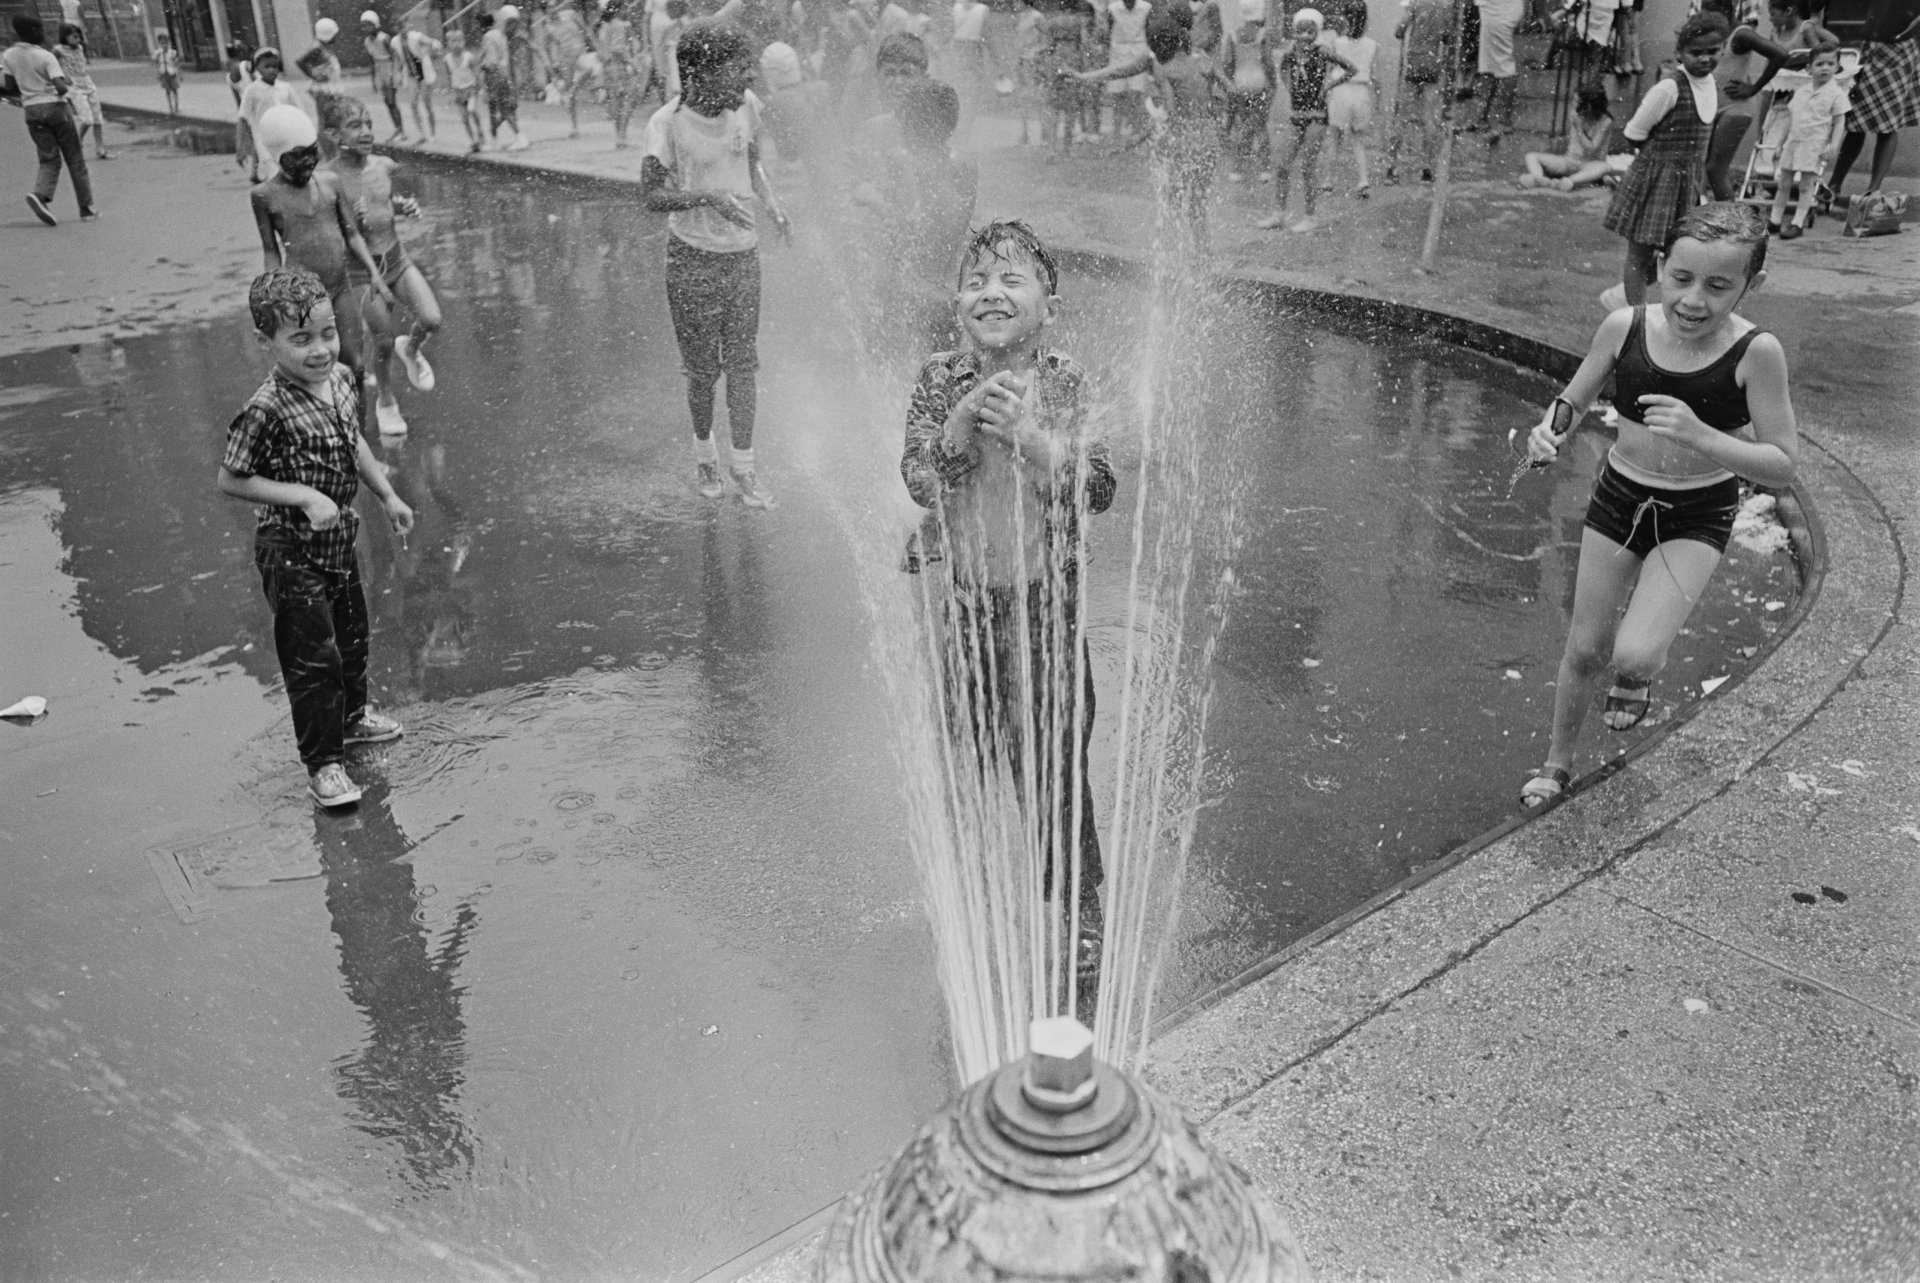  Деца, които се охлаждат по струята на  пожарен хидрант в Харлем, Ню Йорк, август 1966 г. (Снимка от Harry Benson/Express/Hulton Archive/Getty Images)